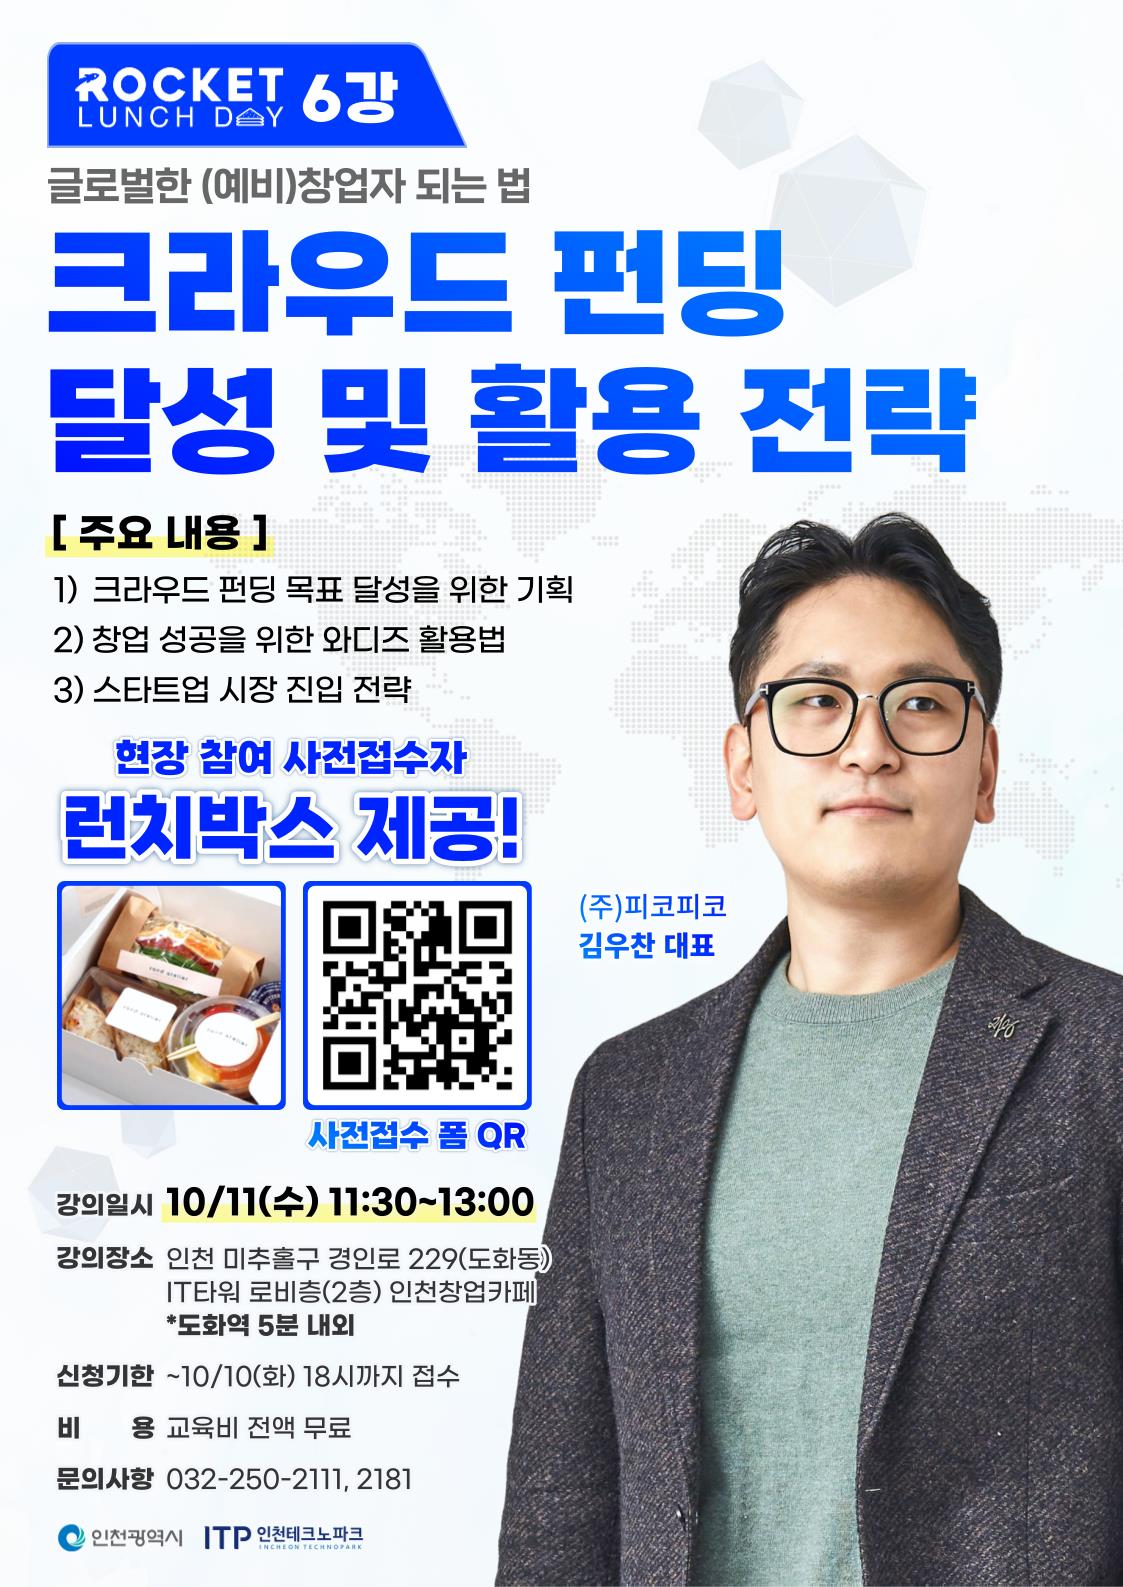 인천창업카페 로켓 런치데이 6강크라우드 펀딩 달성 및 활용 전략 참가자 모집!의 1번째 이미지